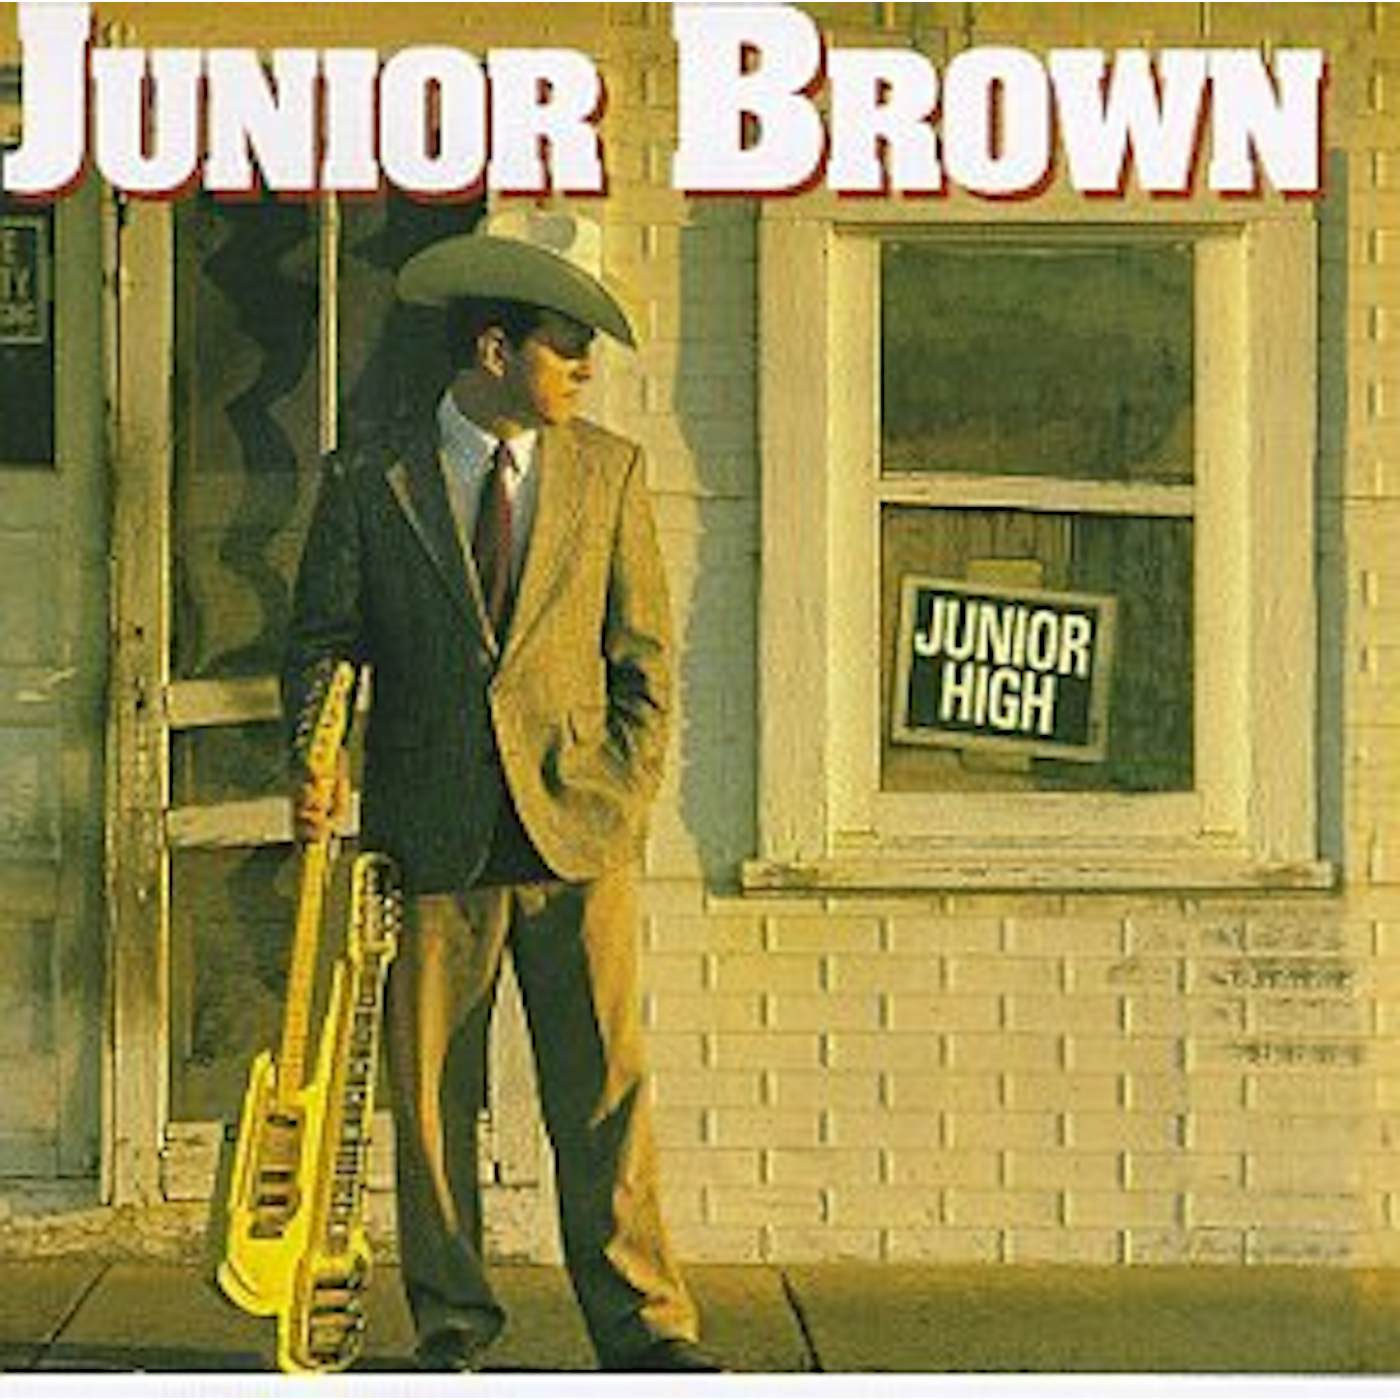 Junior Brown JUNIOR HIGH CD